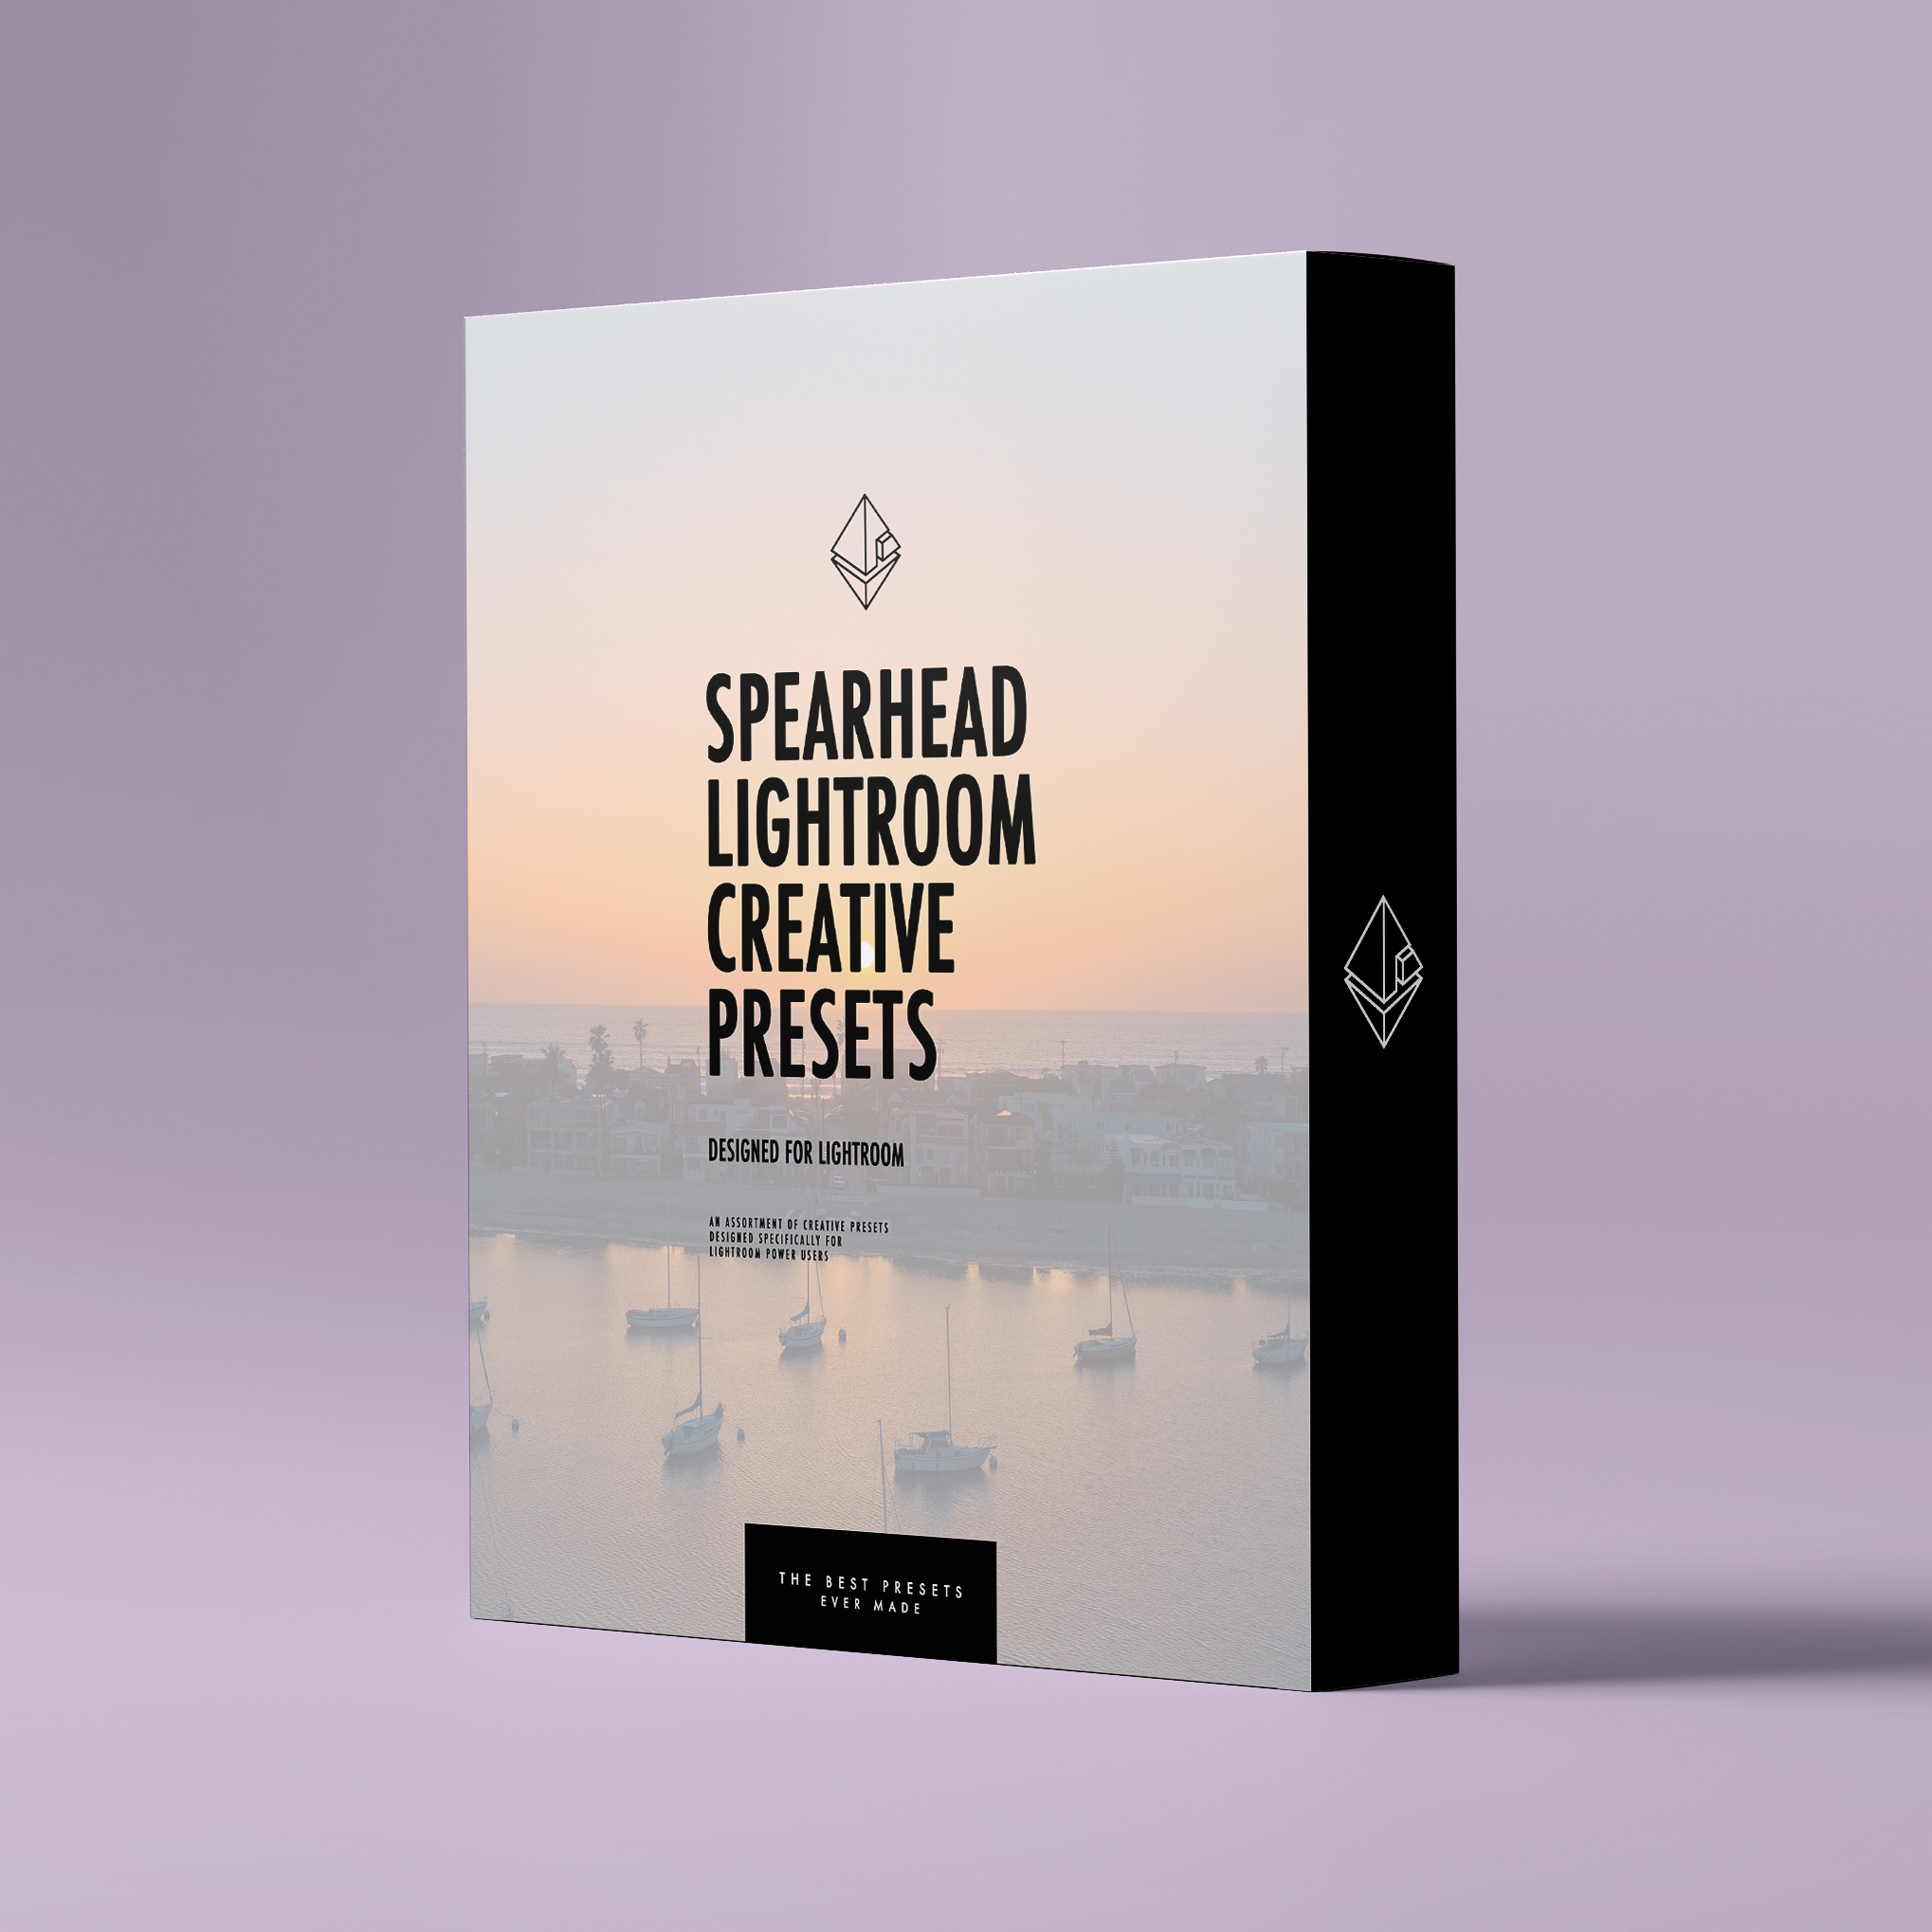 Spearhead Lightroom Creative Presets